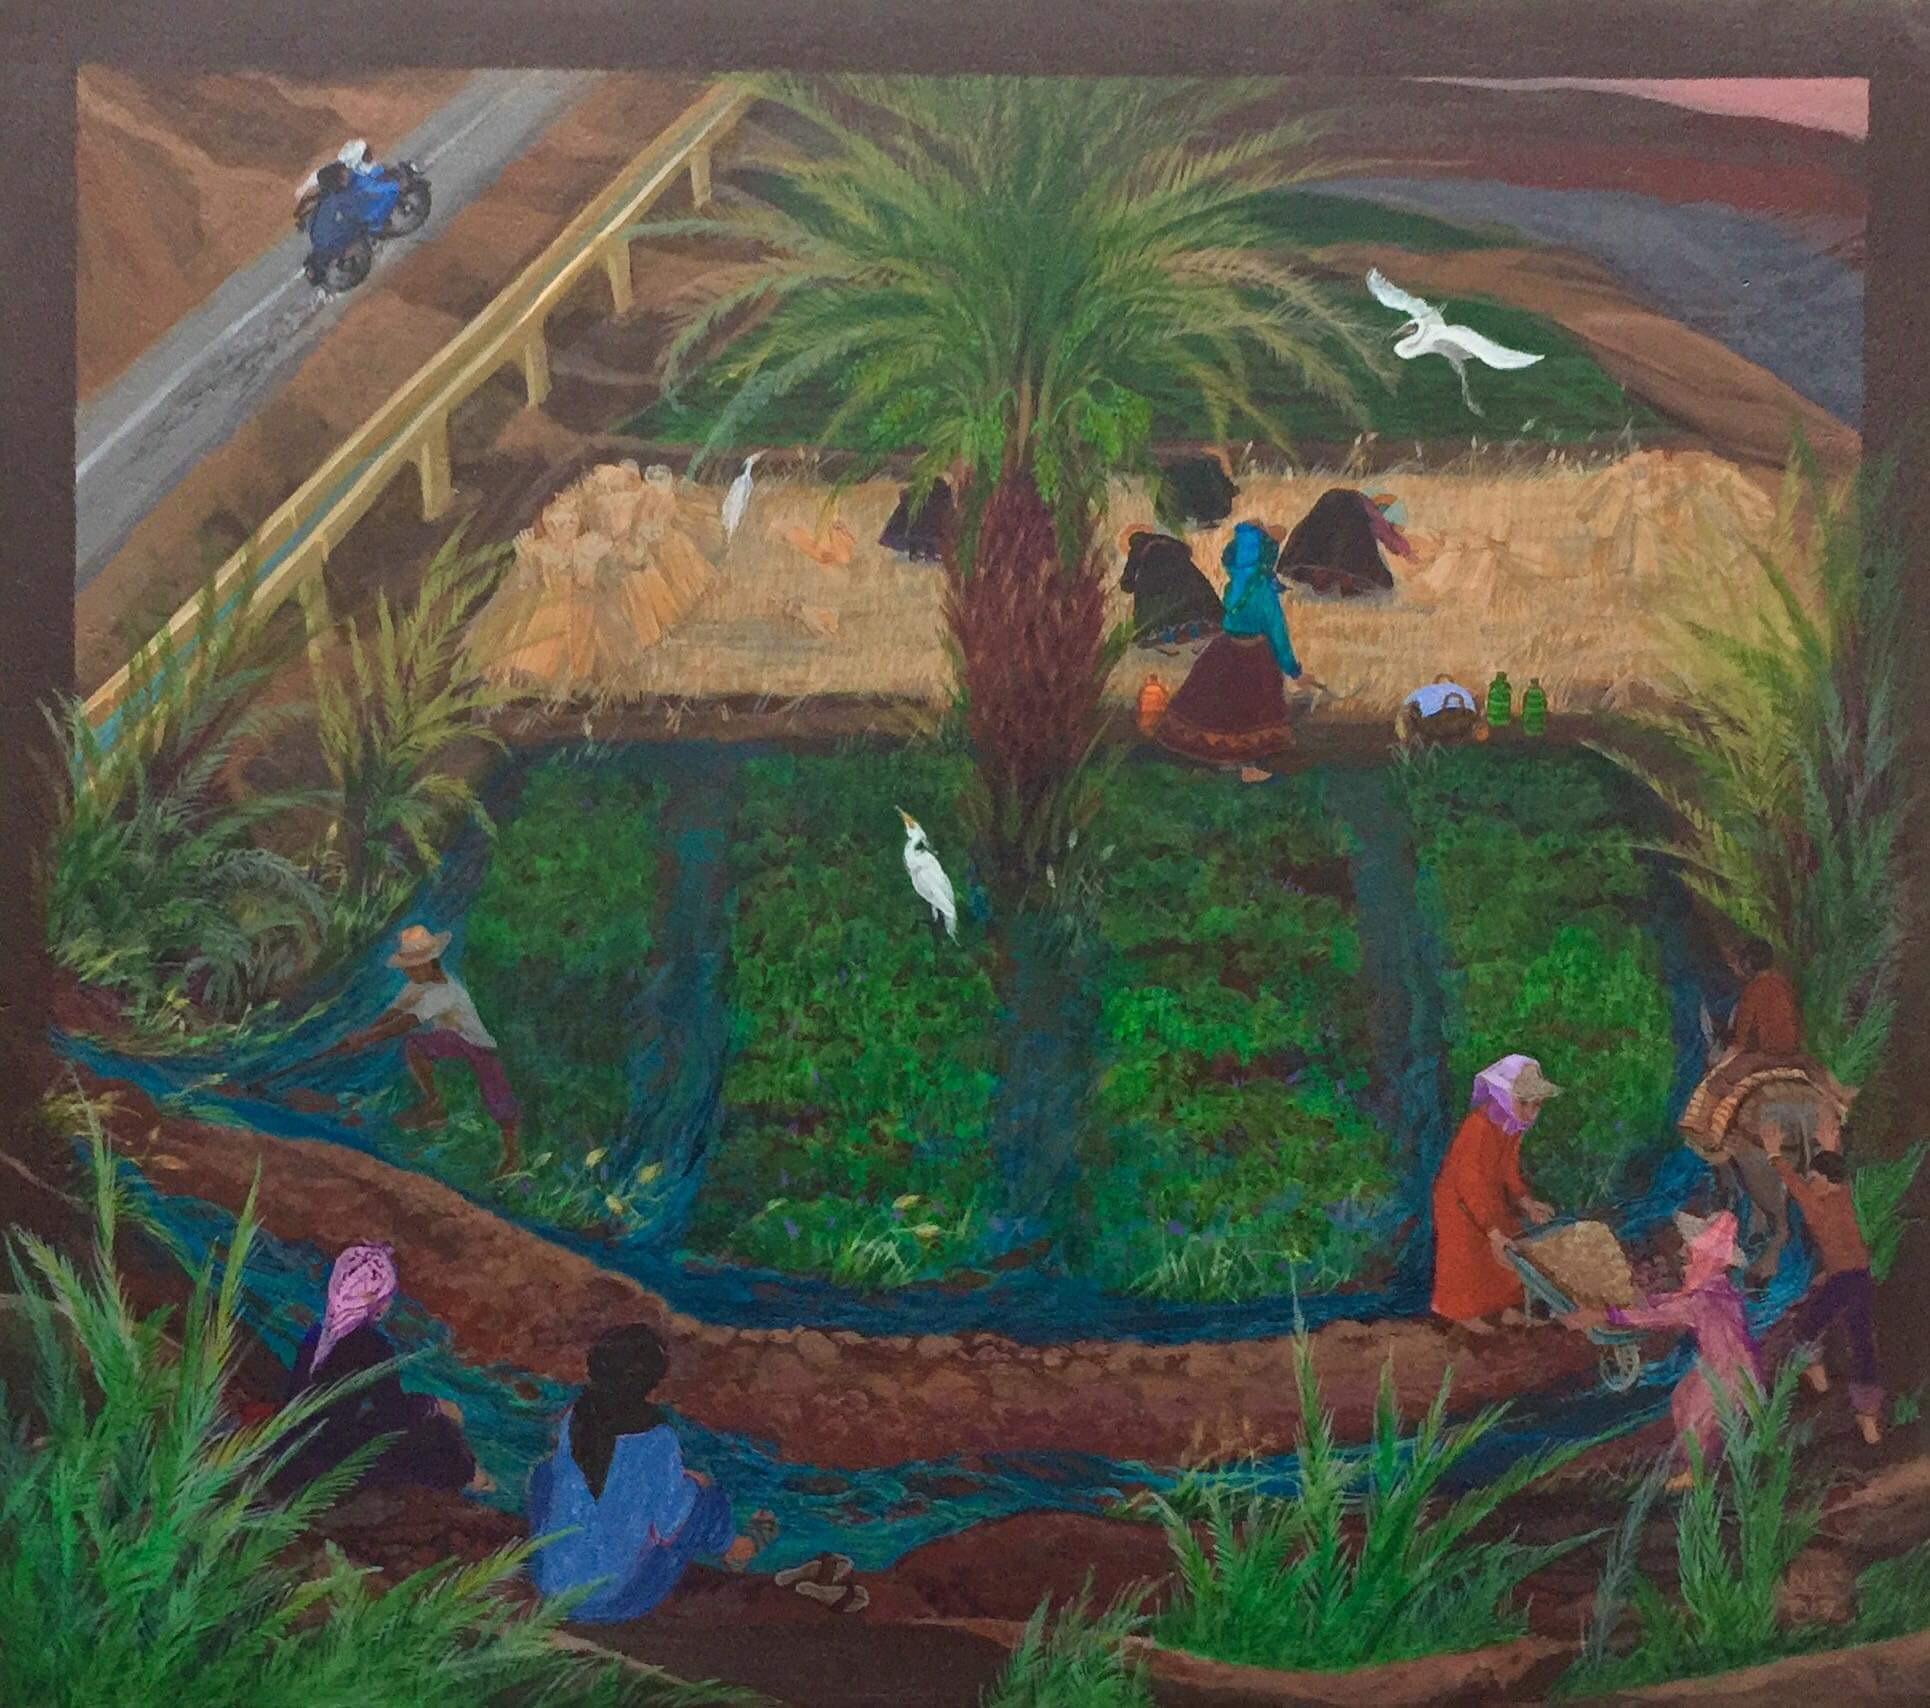 Landscape Painting Nancy Patterson - Peinture d'art populaire britannique, artiste canadien du Maroc Kasbah Fields Water Egrets